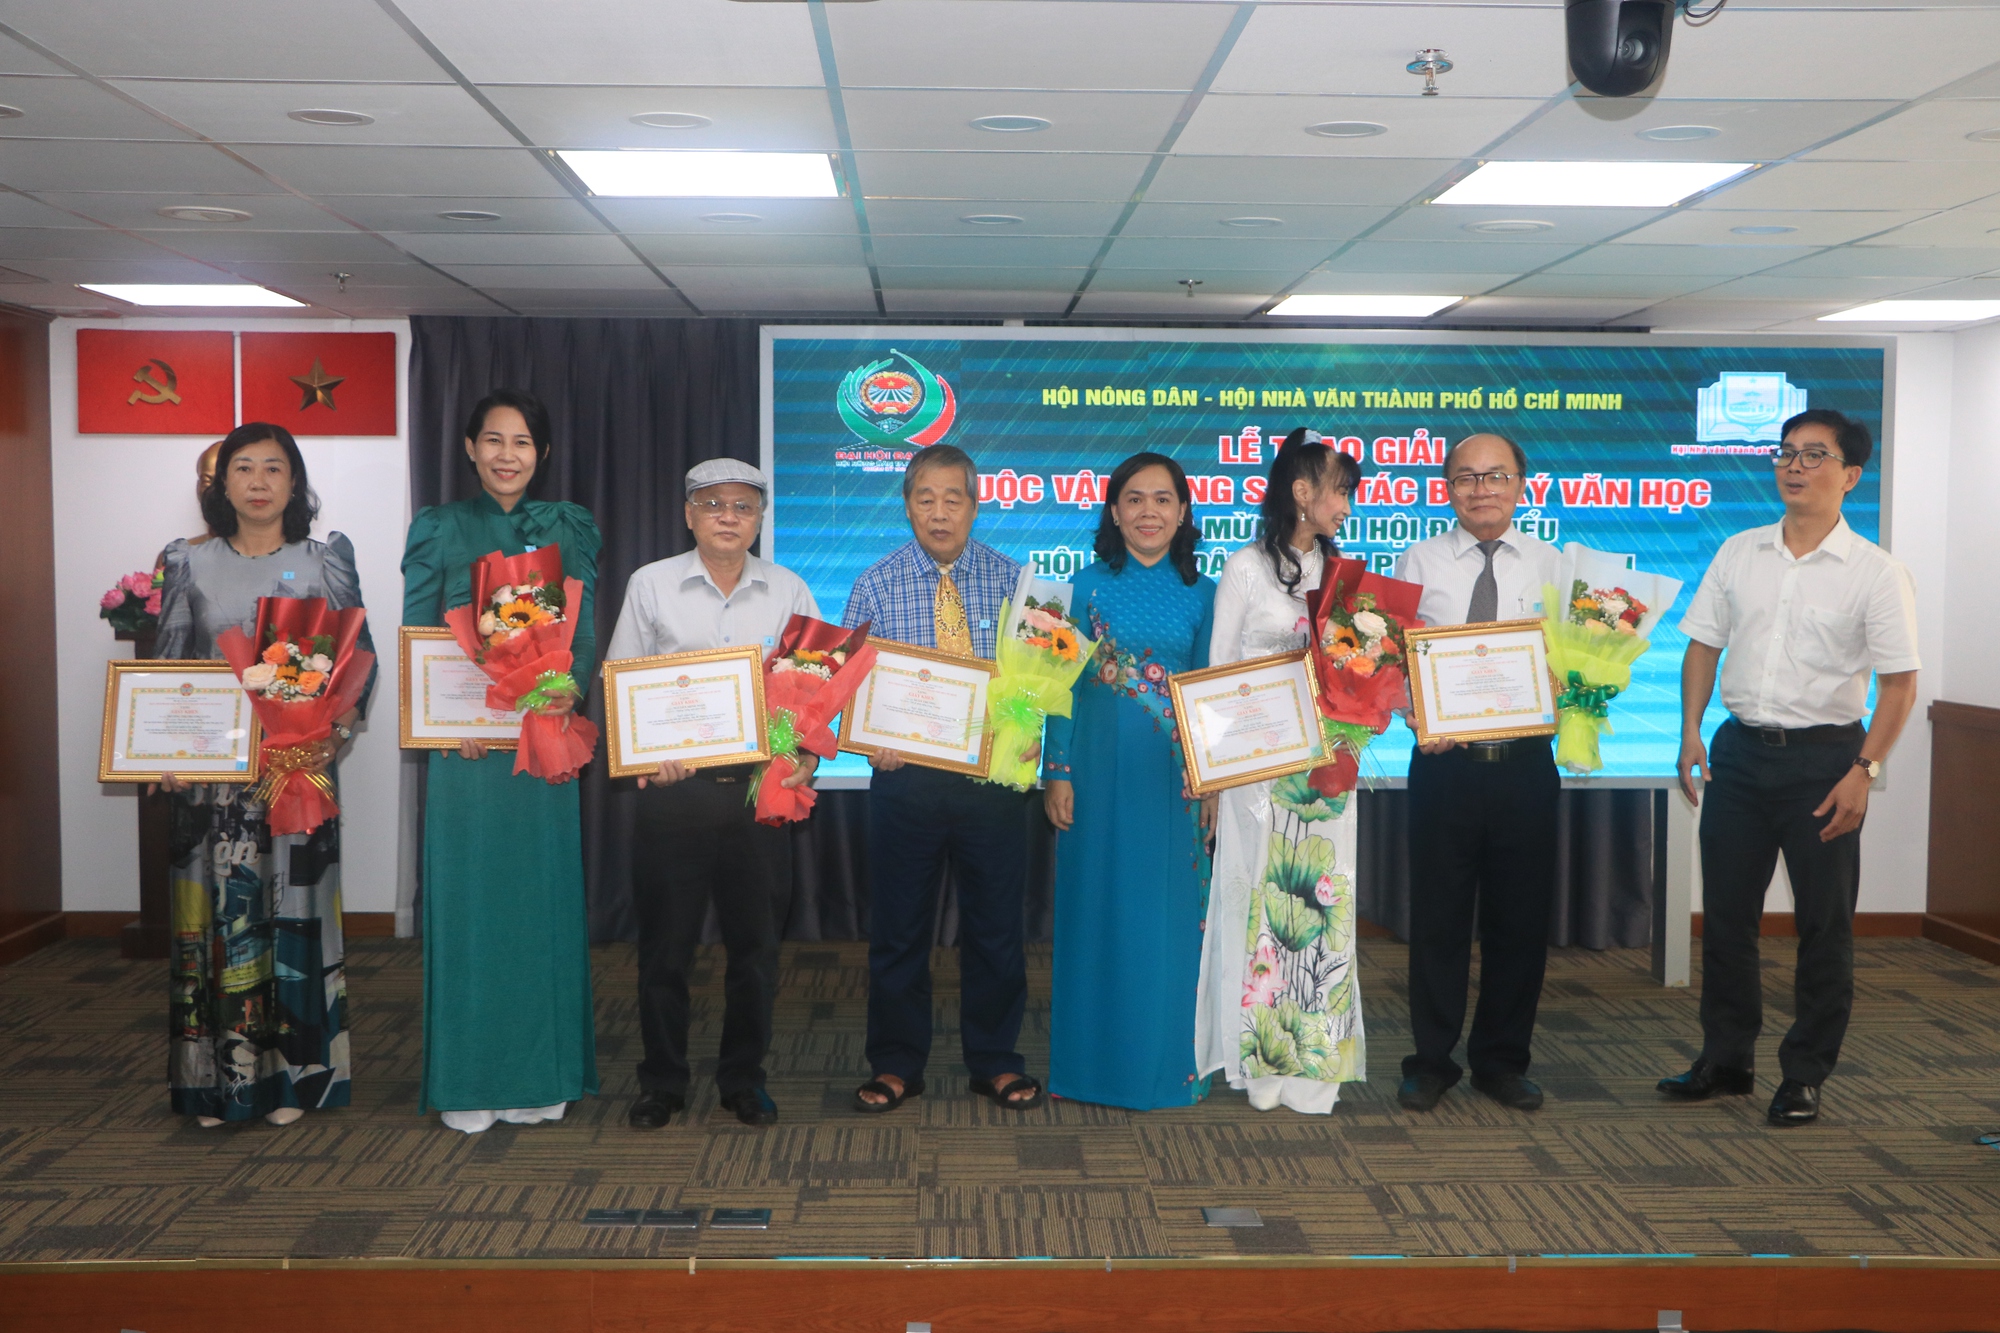 Hội Nông dân TP.HCM trao giải những ấn phẩm chào mừng Đại hội đại biểu Hội Nông dân TP.HCM lần thứ XI - Ảnh 4.